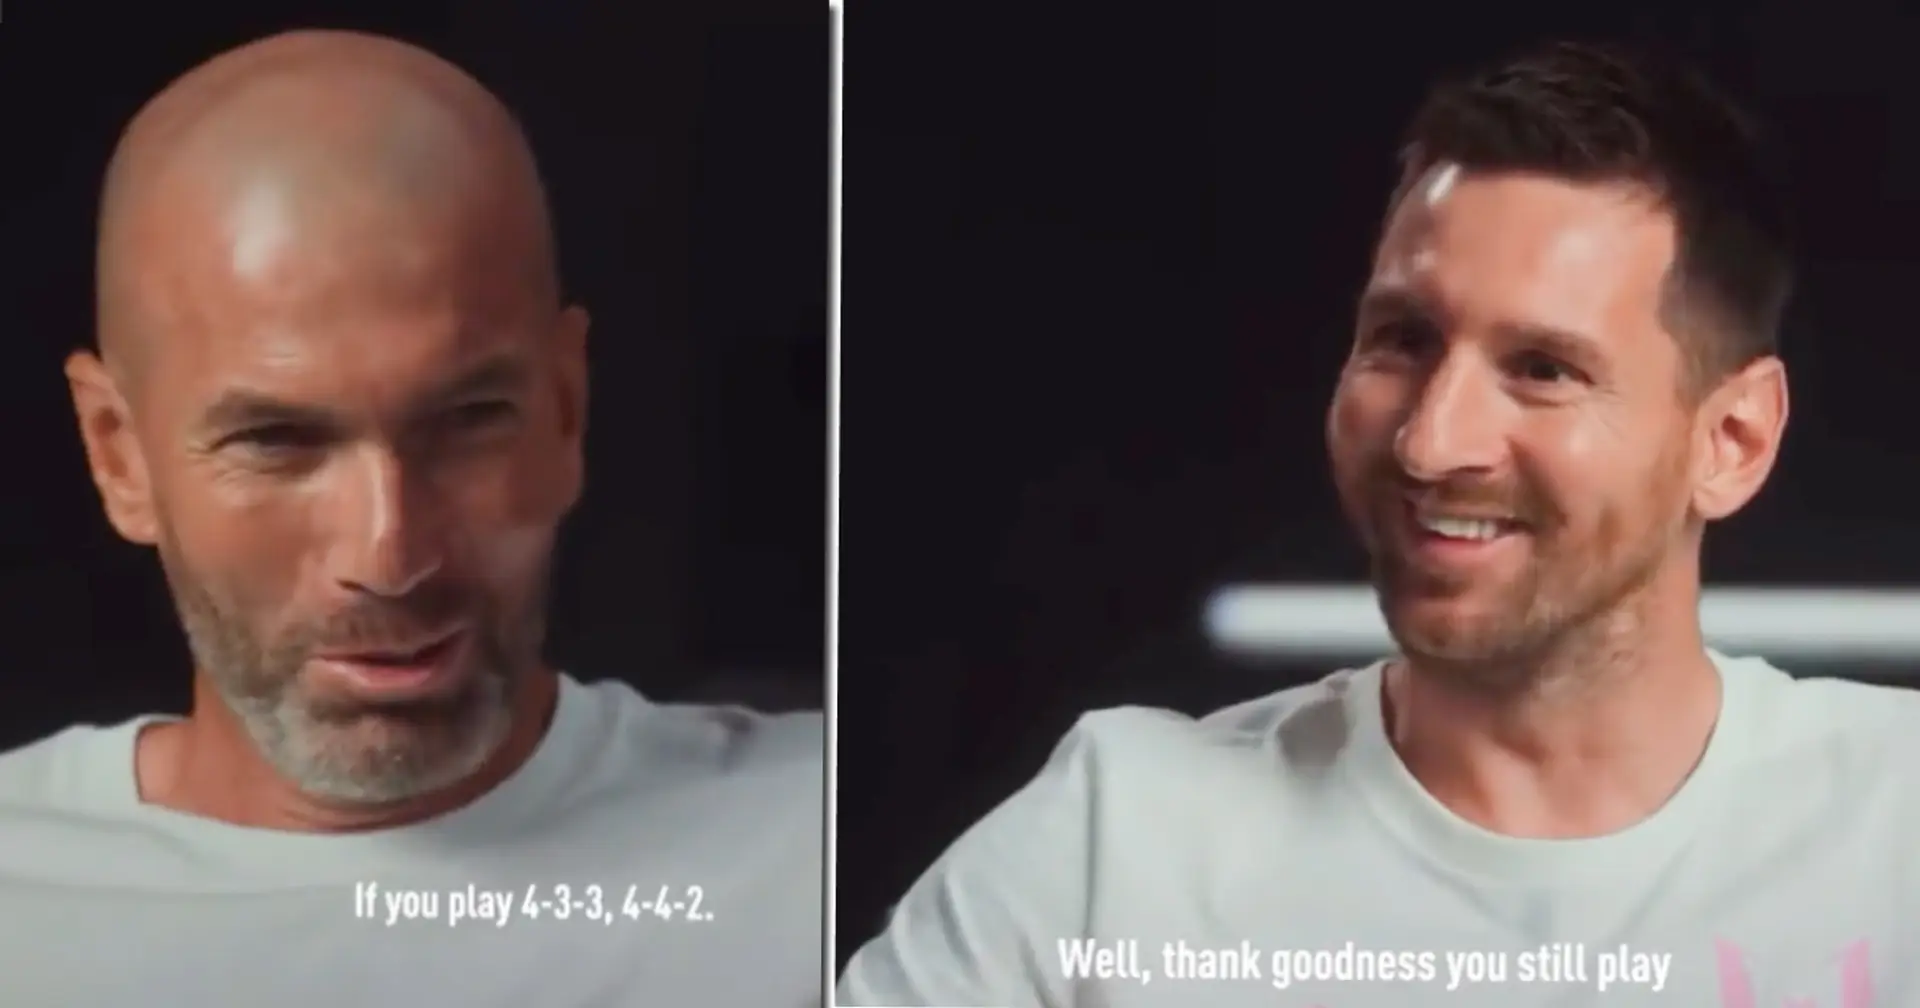 "Dieu merci, tu joues toujours": Zidane rencontre Messi alors que les deux discutent de la disparition du numéro 10 du football